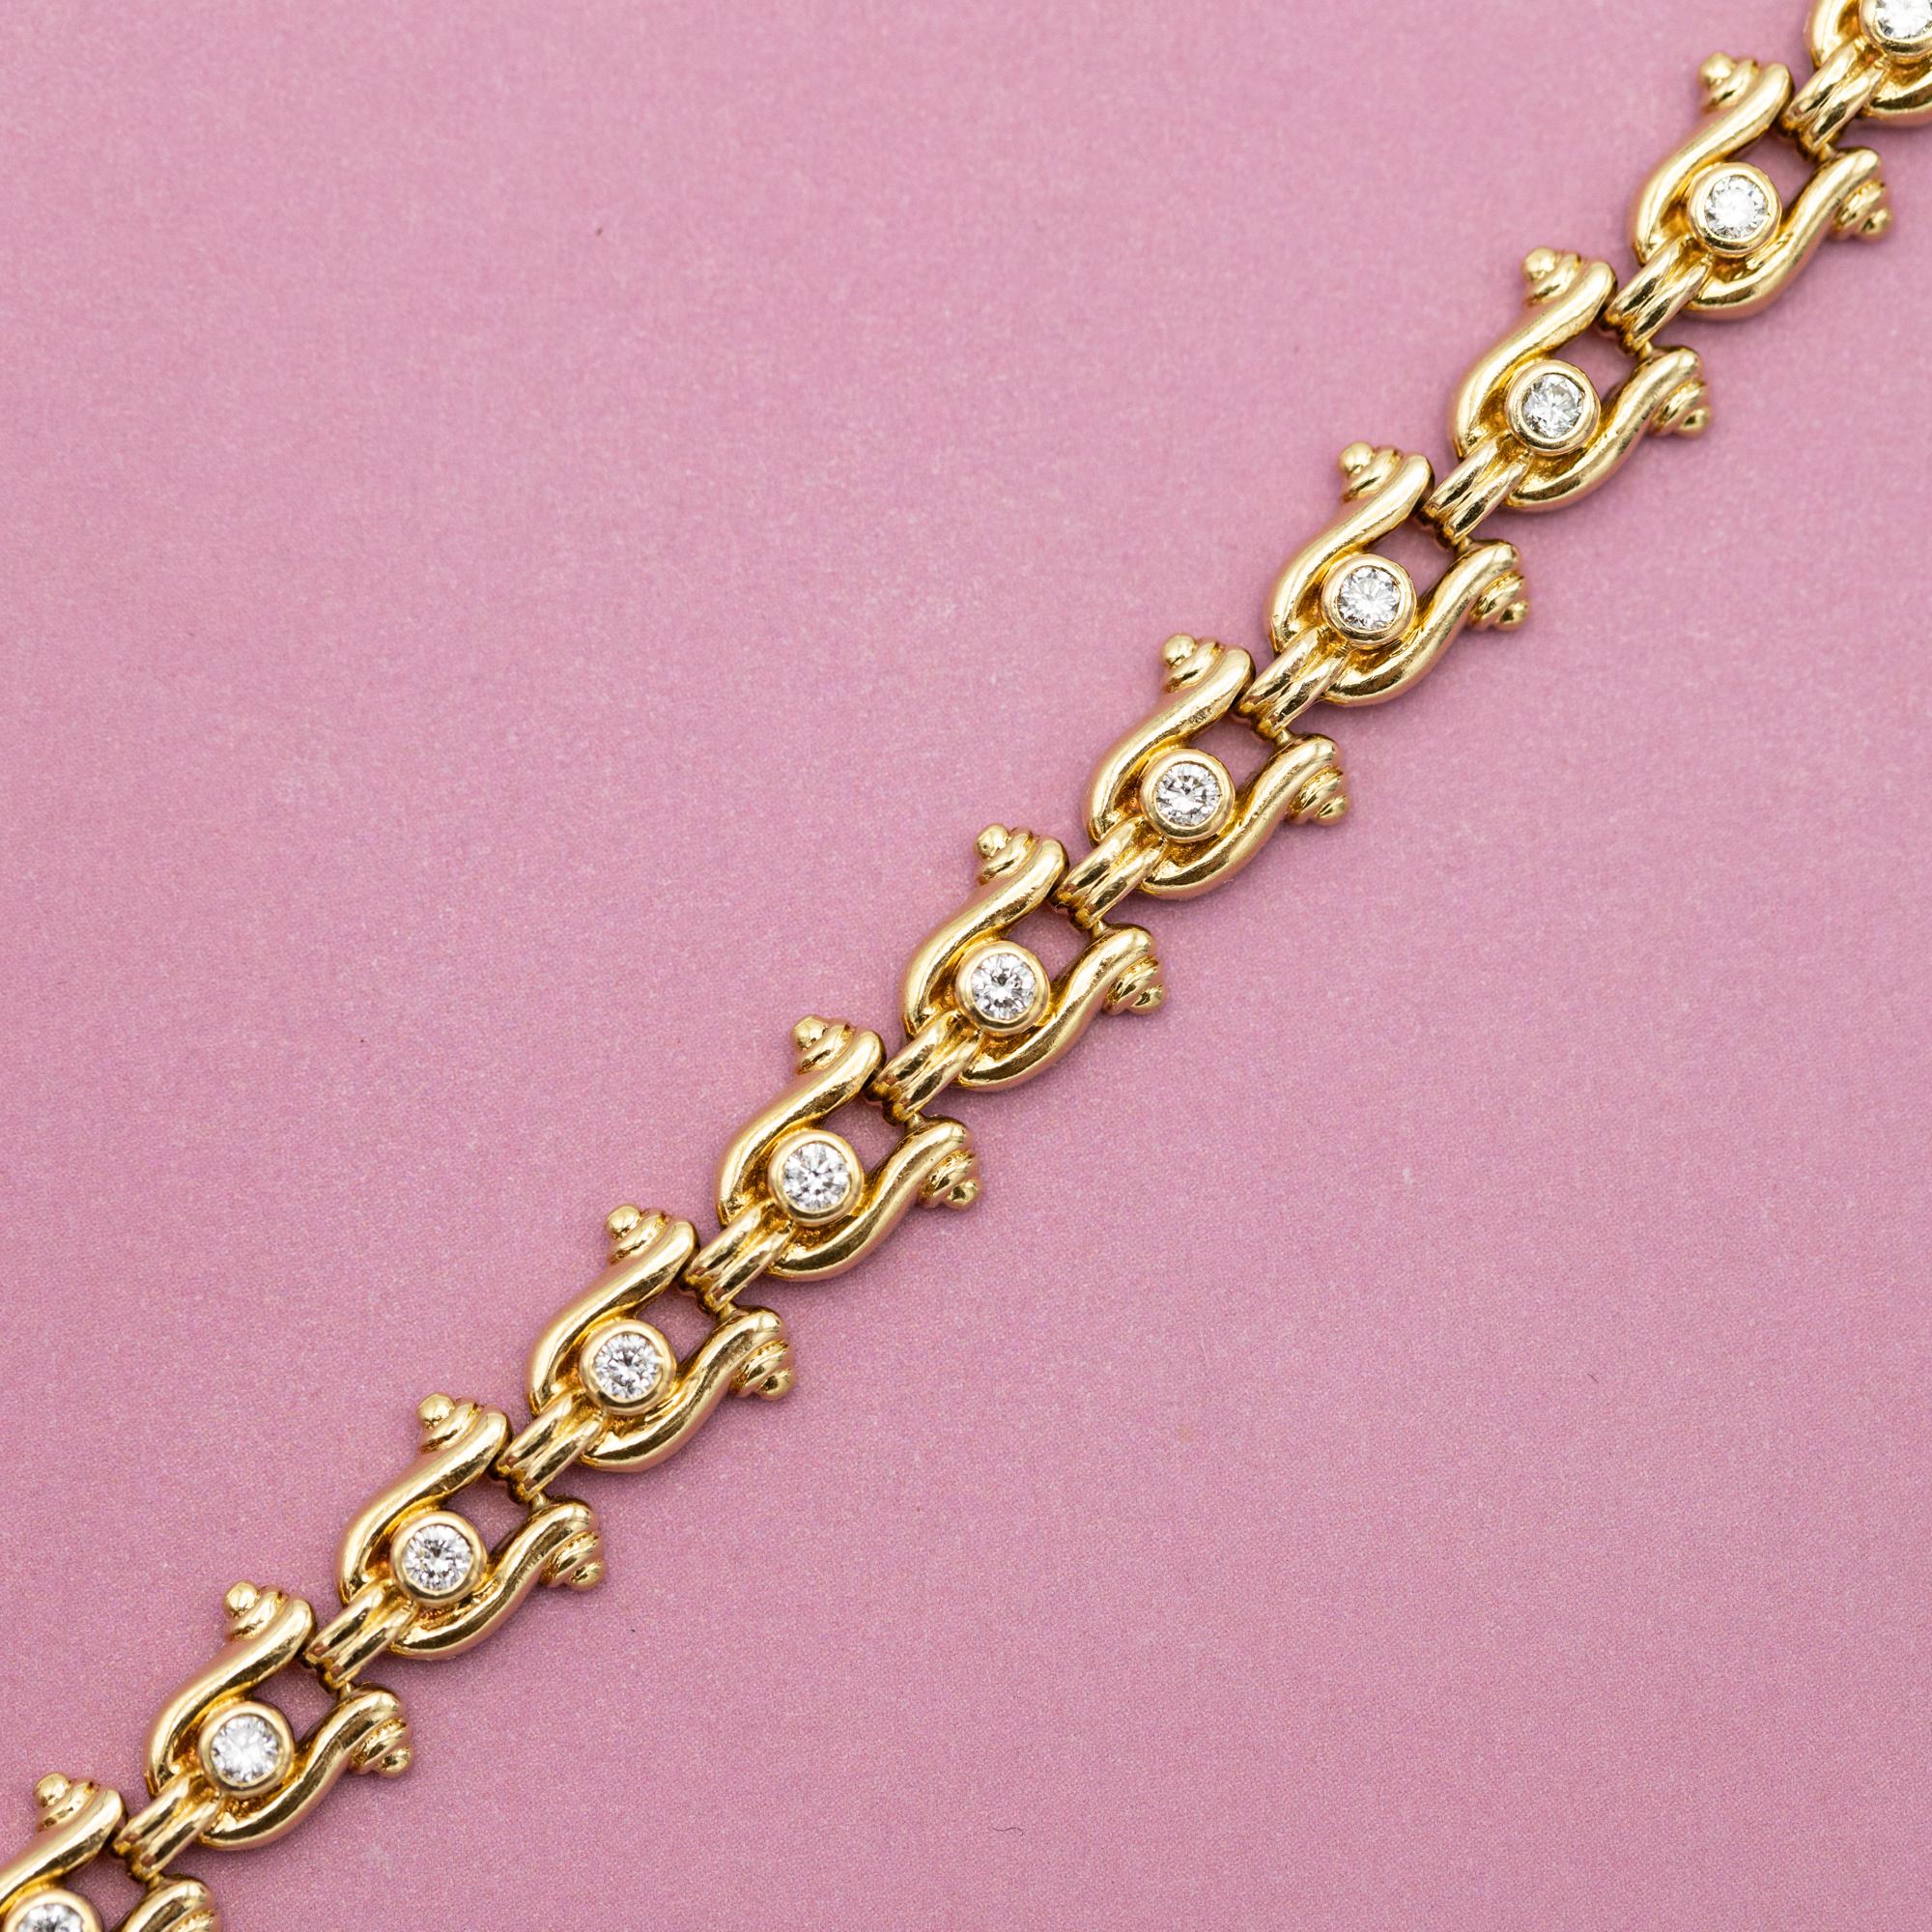 Taille brillant Bracelet tennis vintage en or jaune - Chaussures de cheval - 12,5 g - 0,62 carat de diamants